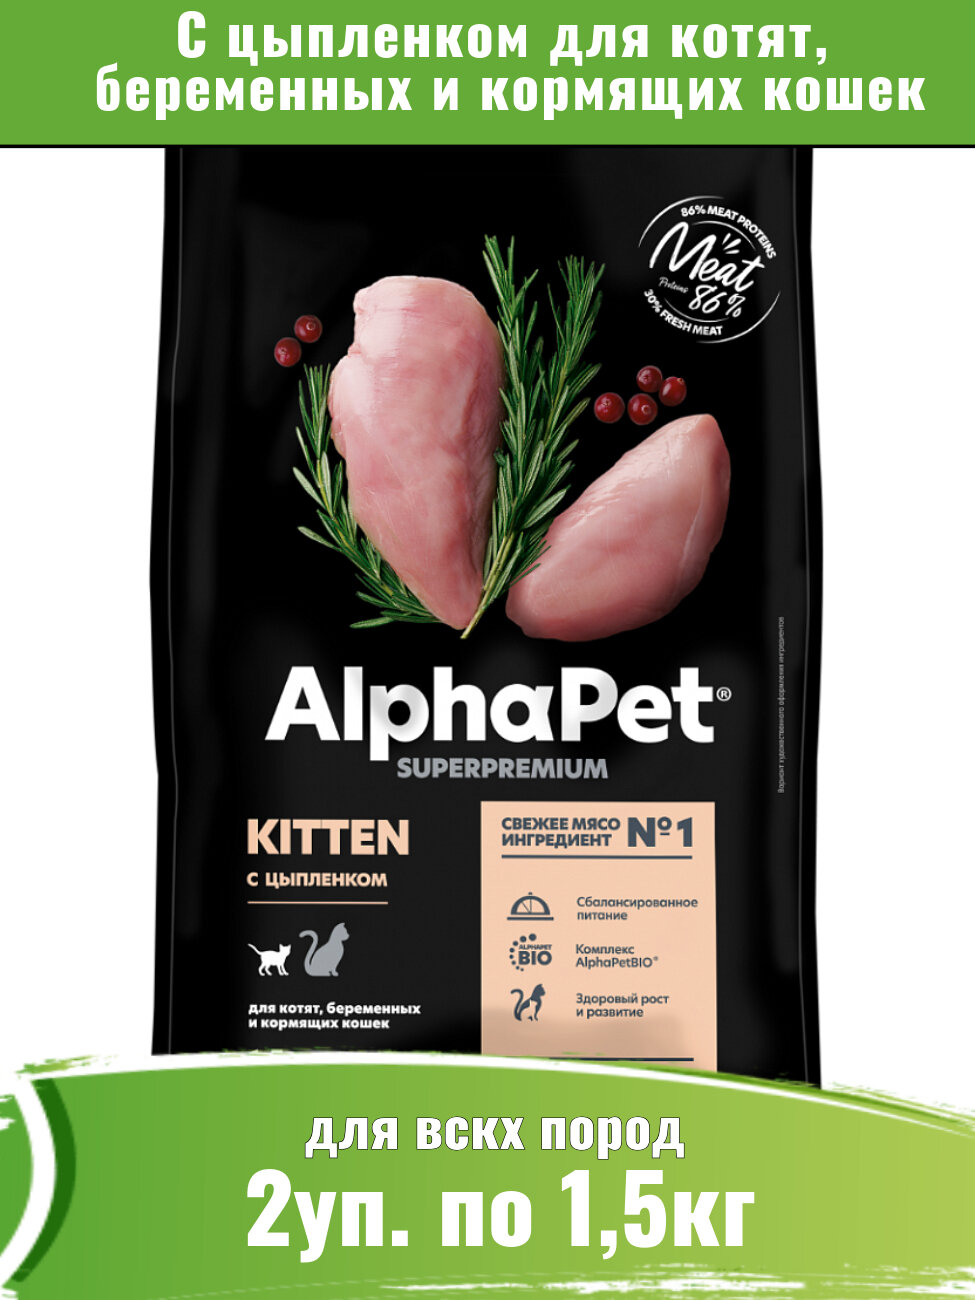 AlphaPet Superpremium 2уп по 1,5кг корм для котят, беременных и кормящих кошек, с цыпленком